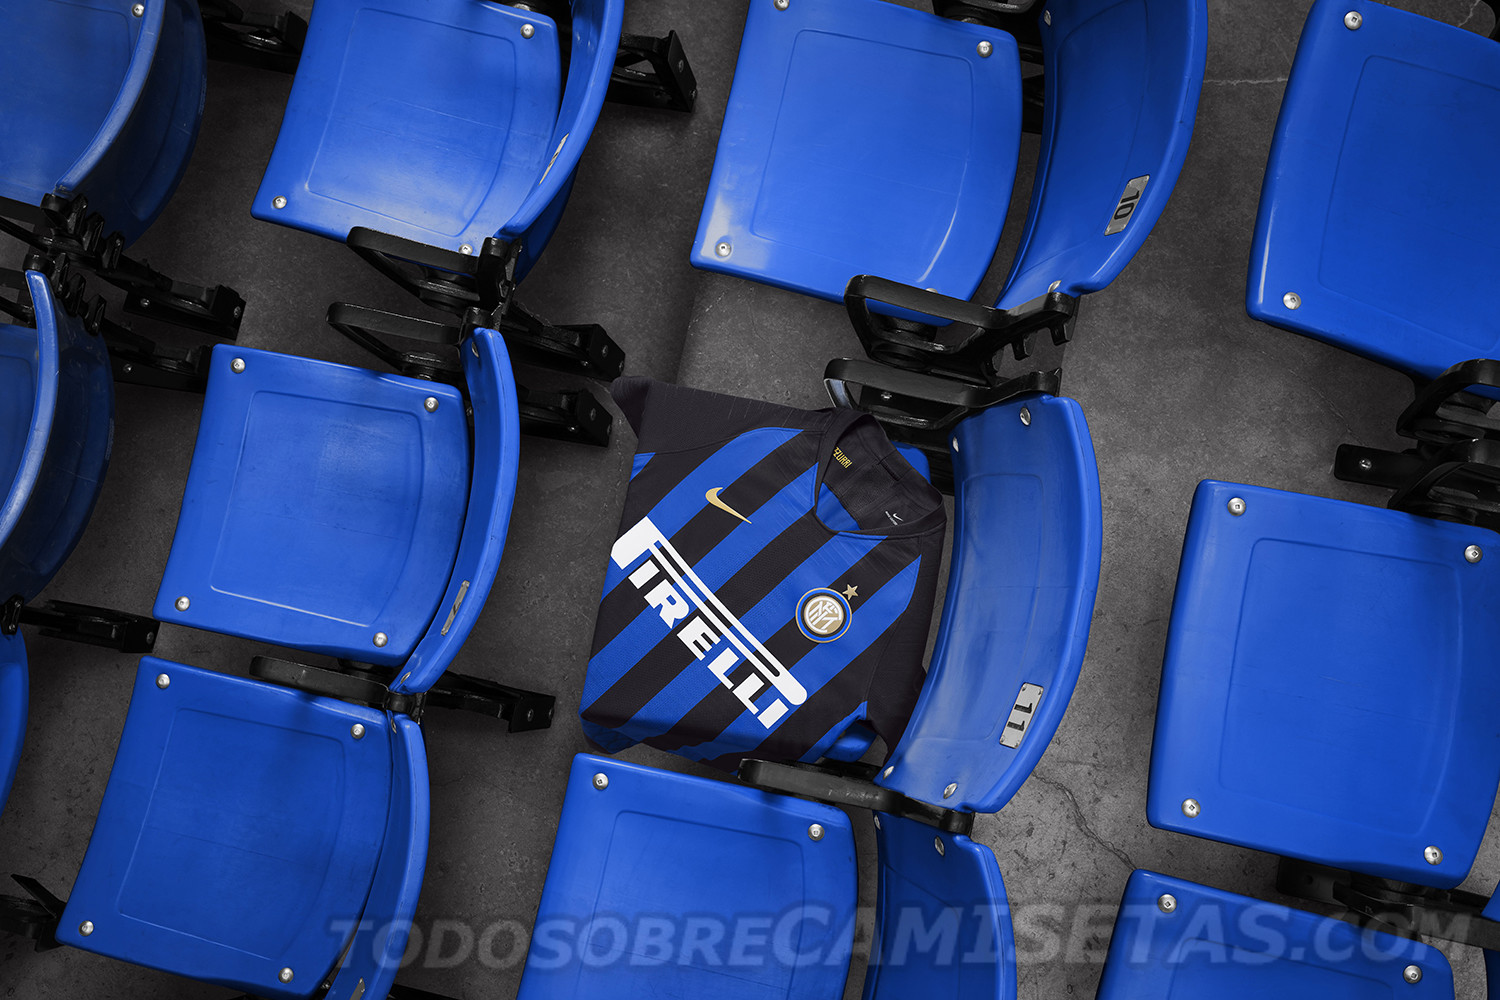 Inter Milan Nike Home Kit 2018-19